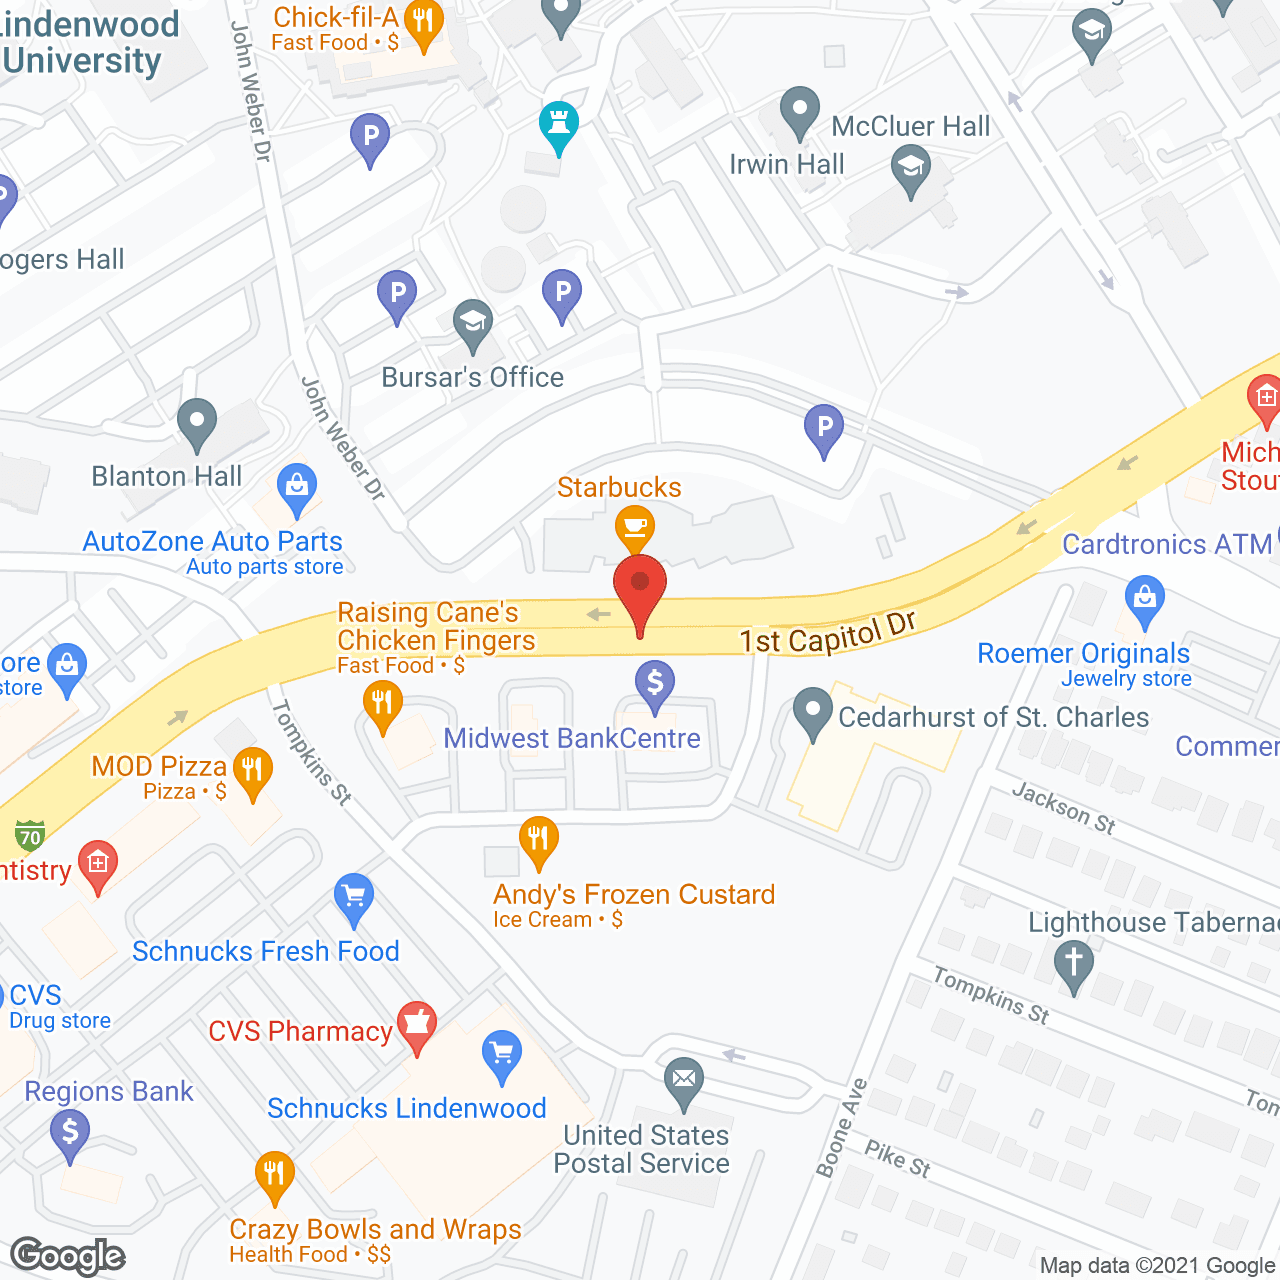 Cedarhurst of St. Charles in google map